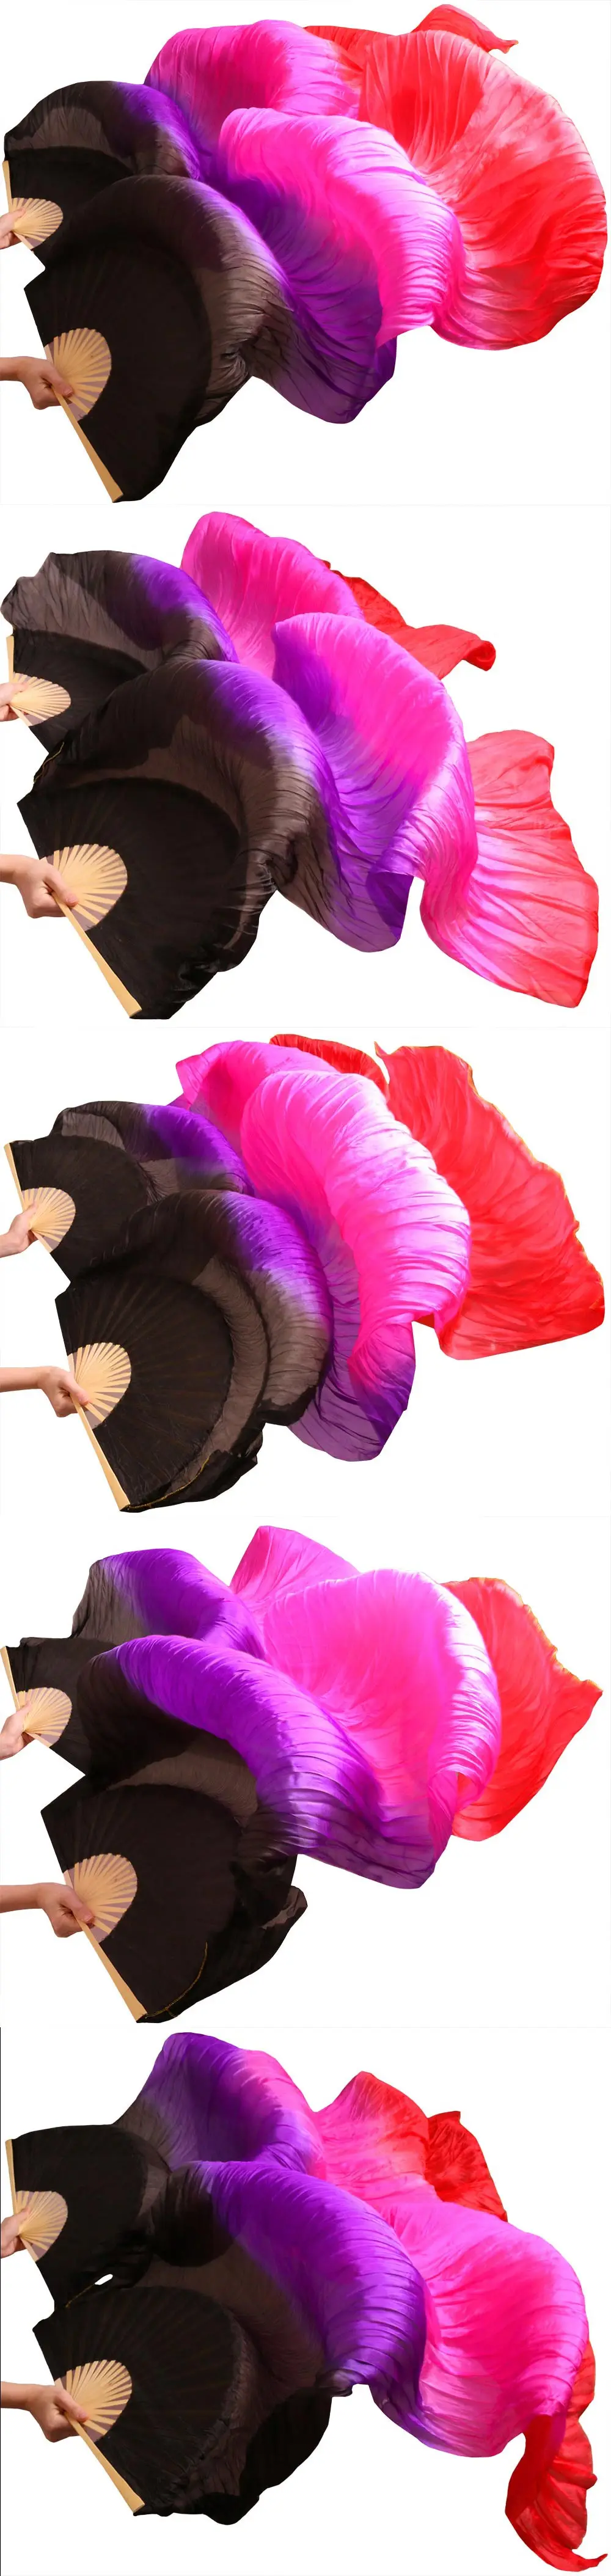 Хиты 2016 высокие продажи ручной работы для женщин качество шелк живота танцевальный веер танец 100% натурального шелка вуали 1 пара 4 цвета 180*90